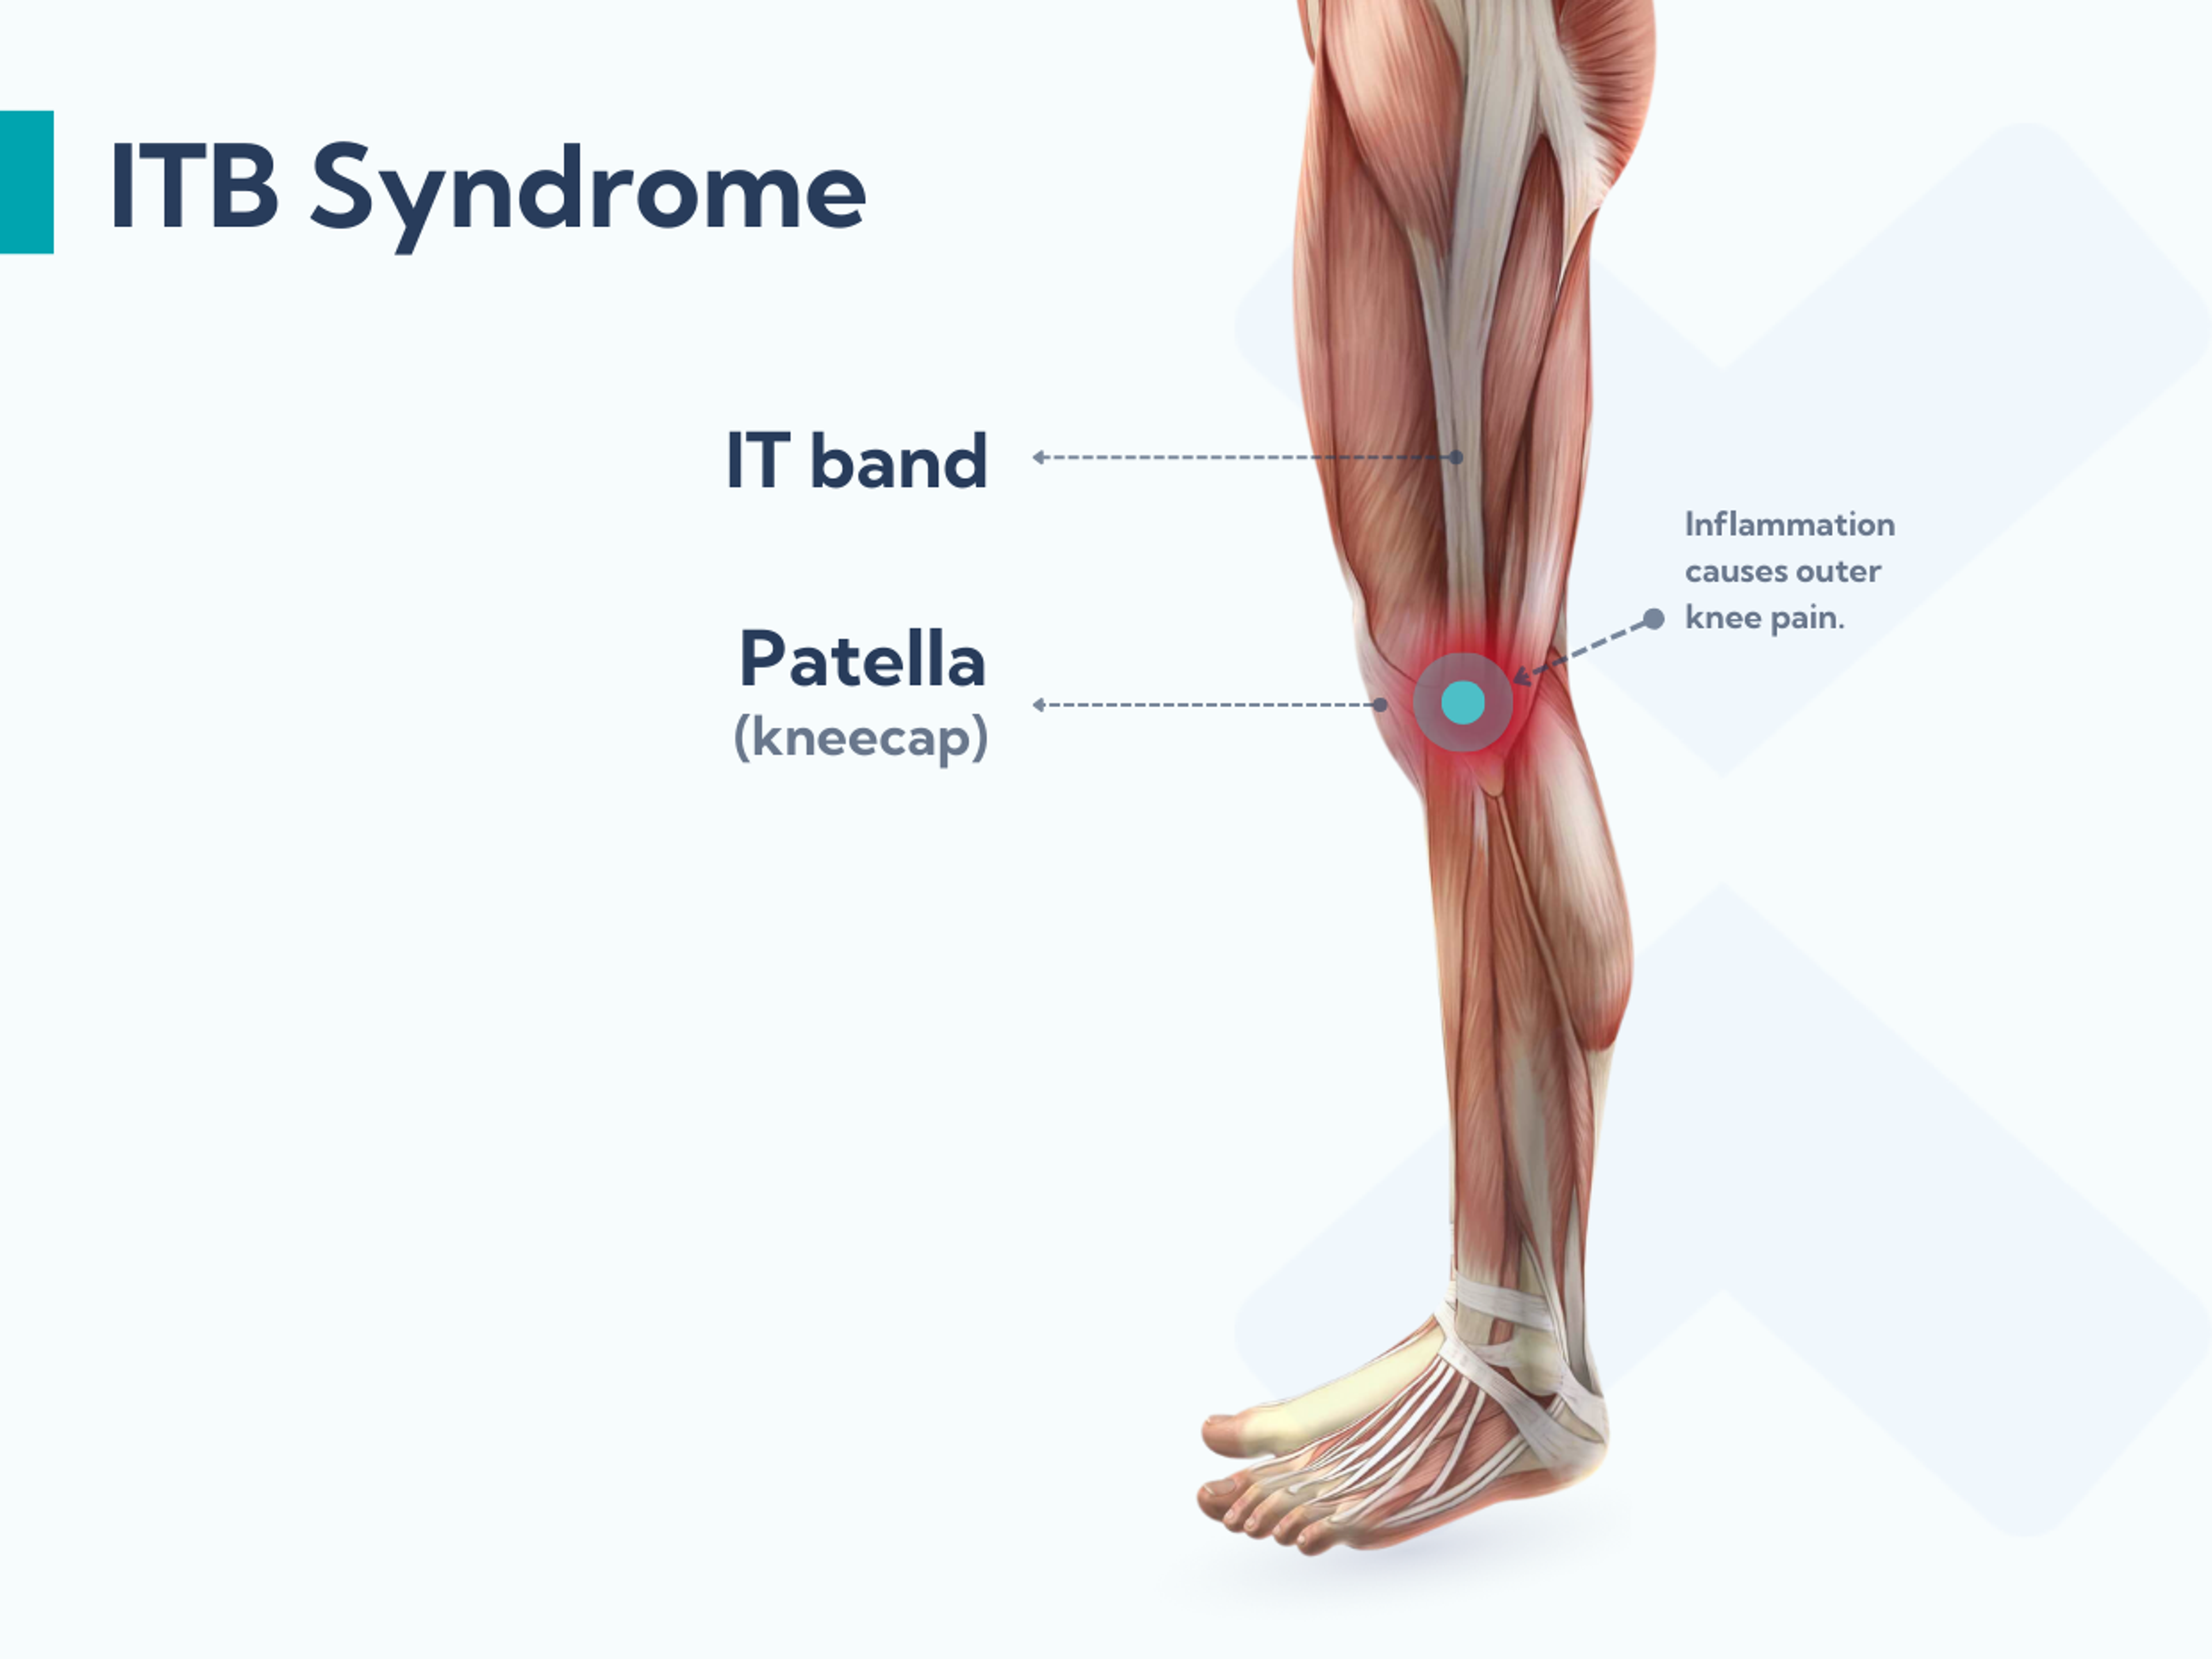 Das IT-Band-Syndrom oder iliotibiale Bandsyndrom ITBS ist eine Überlastungsverletzung und verursacht Schmerzen im IT-Band an der Außenseite des Knies.